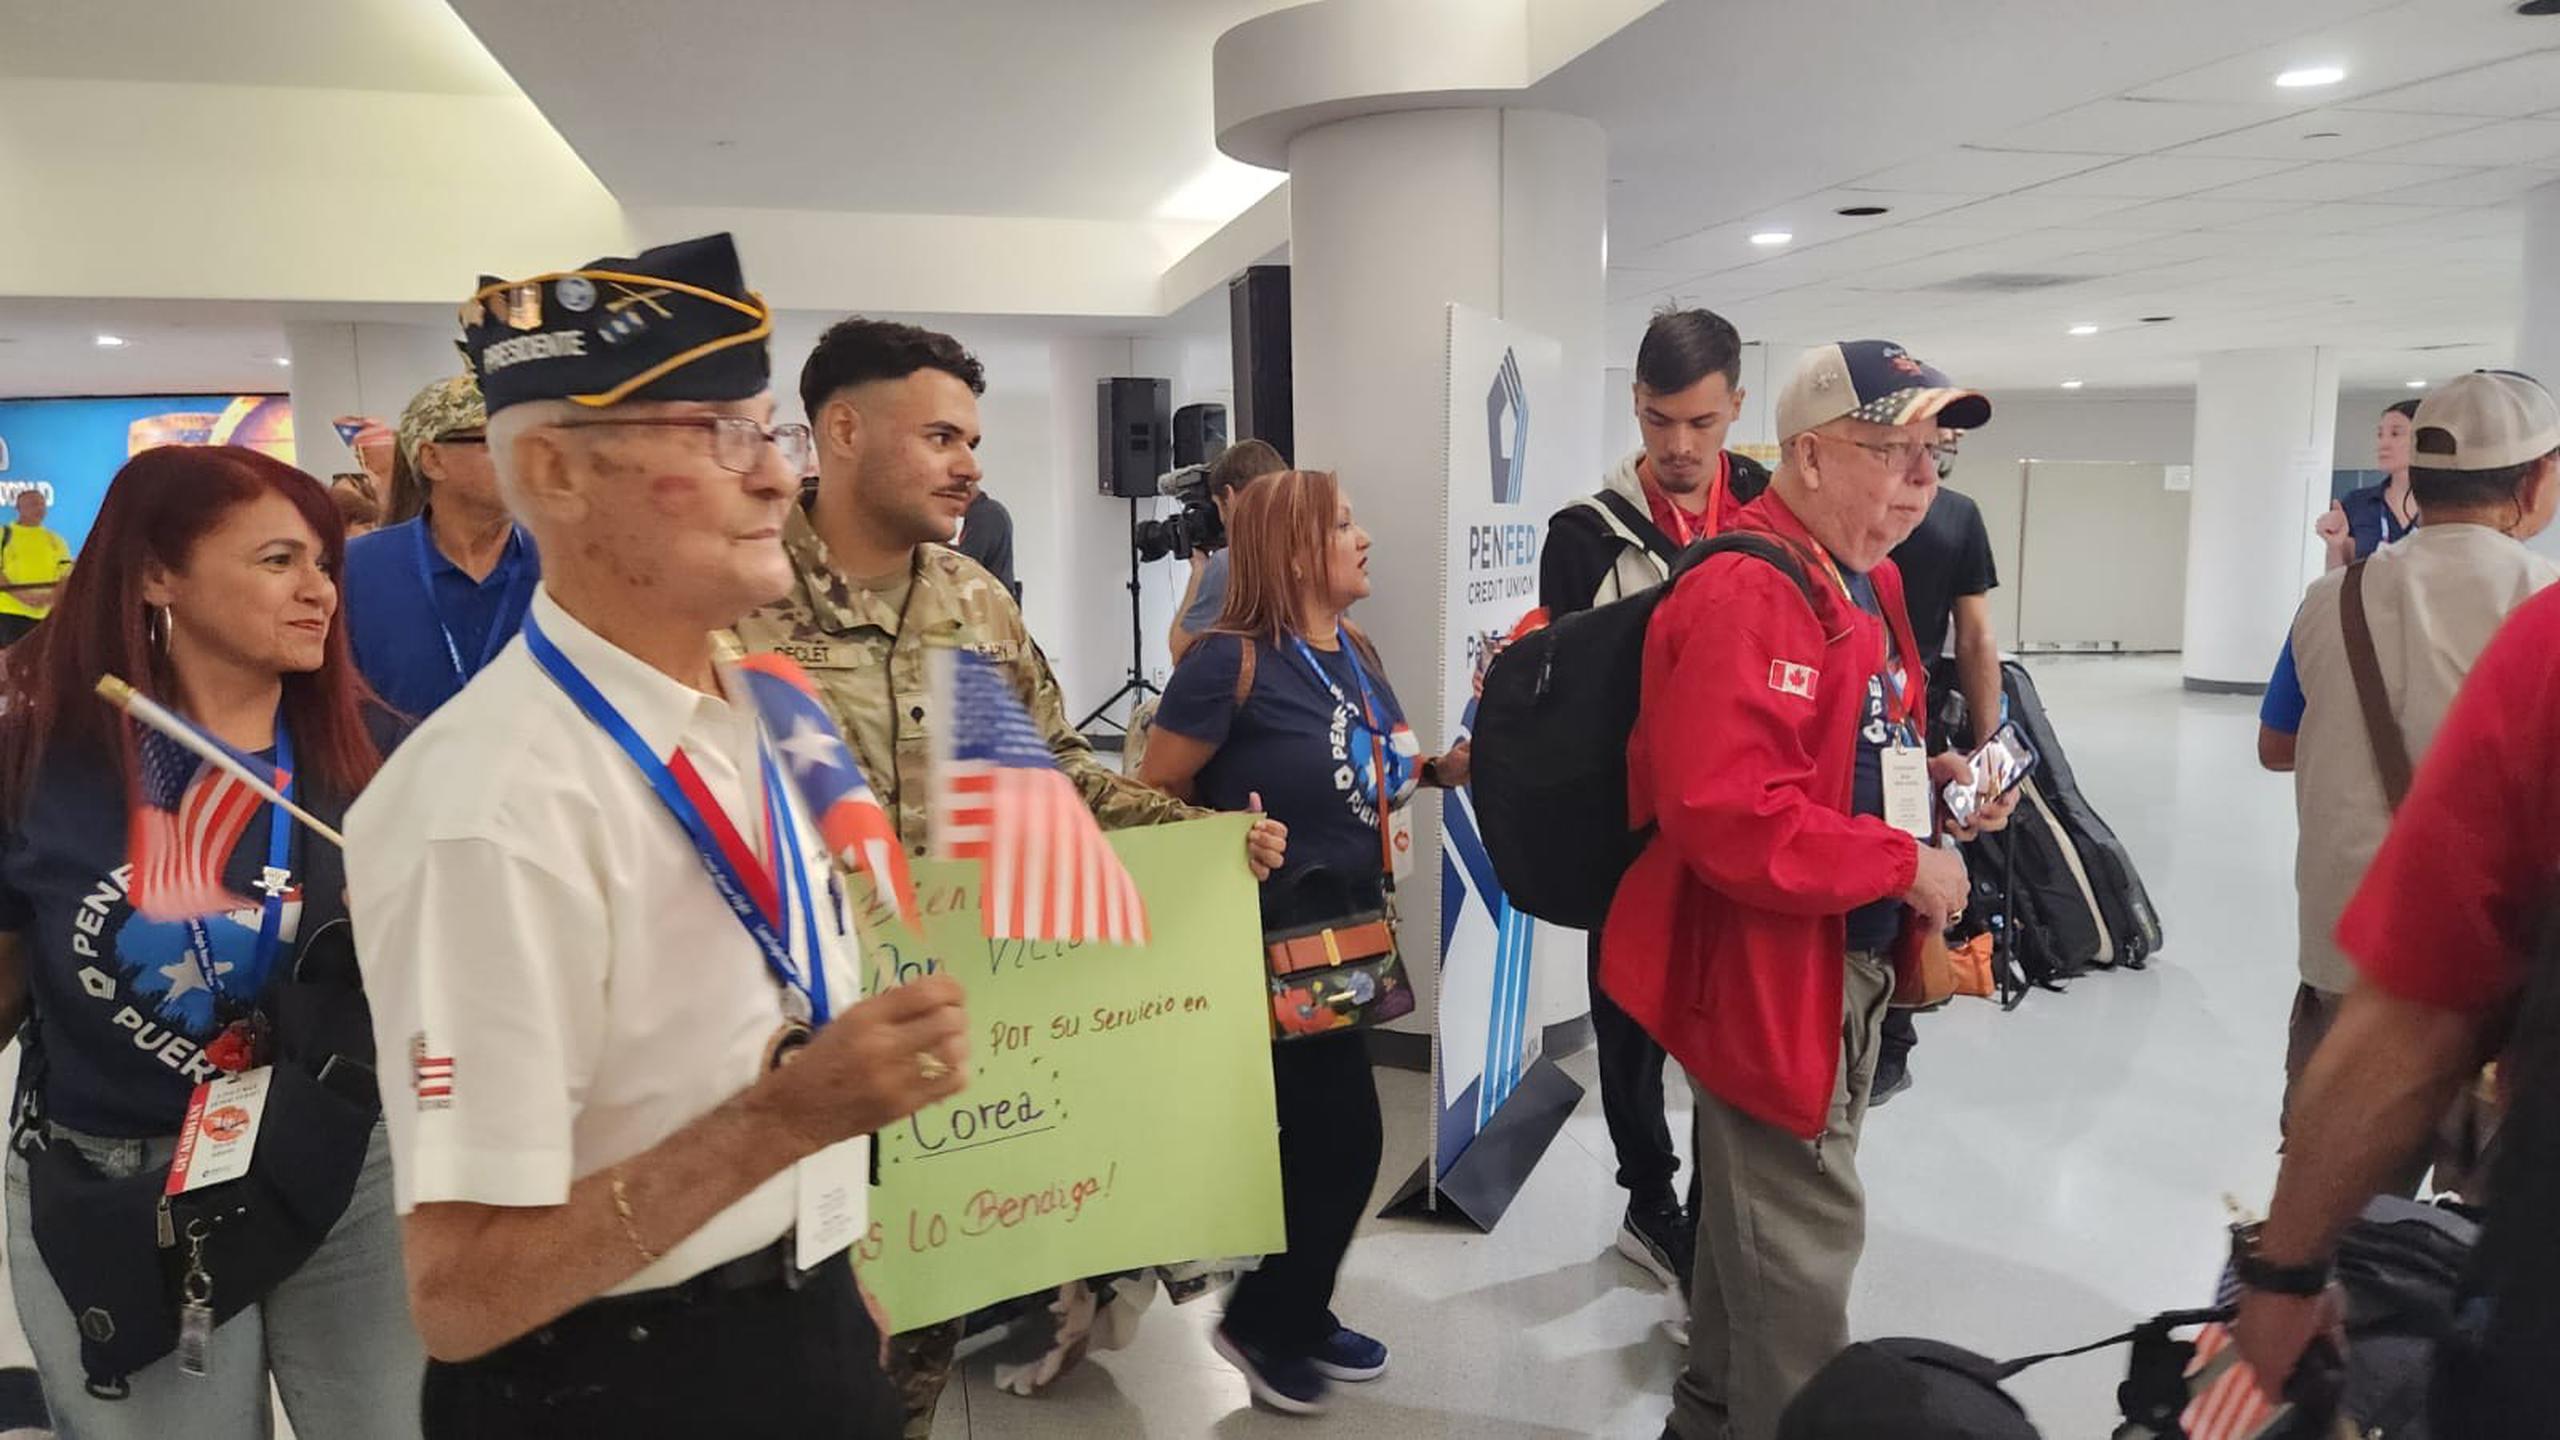 Recibieron a los veteranos con aplausos y música en el aeropuerto Luis Muñoz Marín en San Juan.